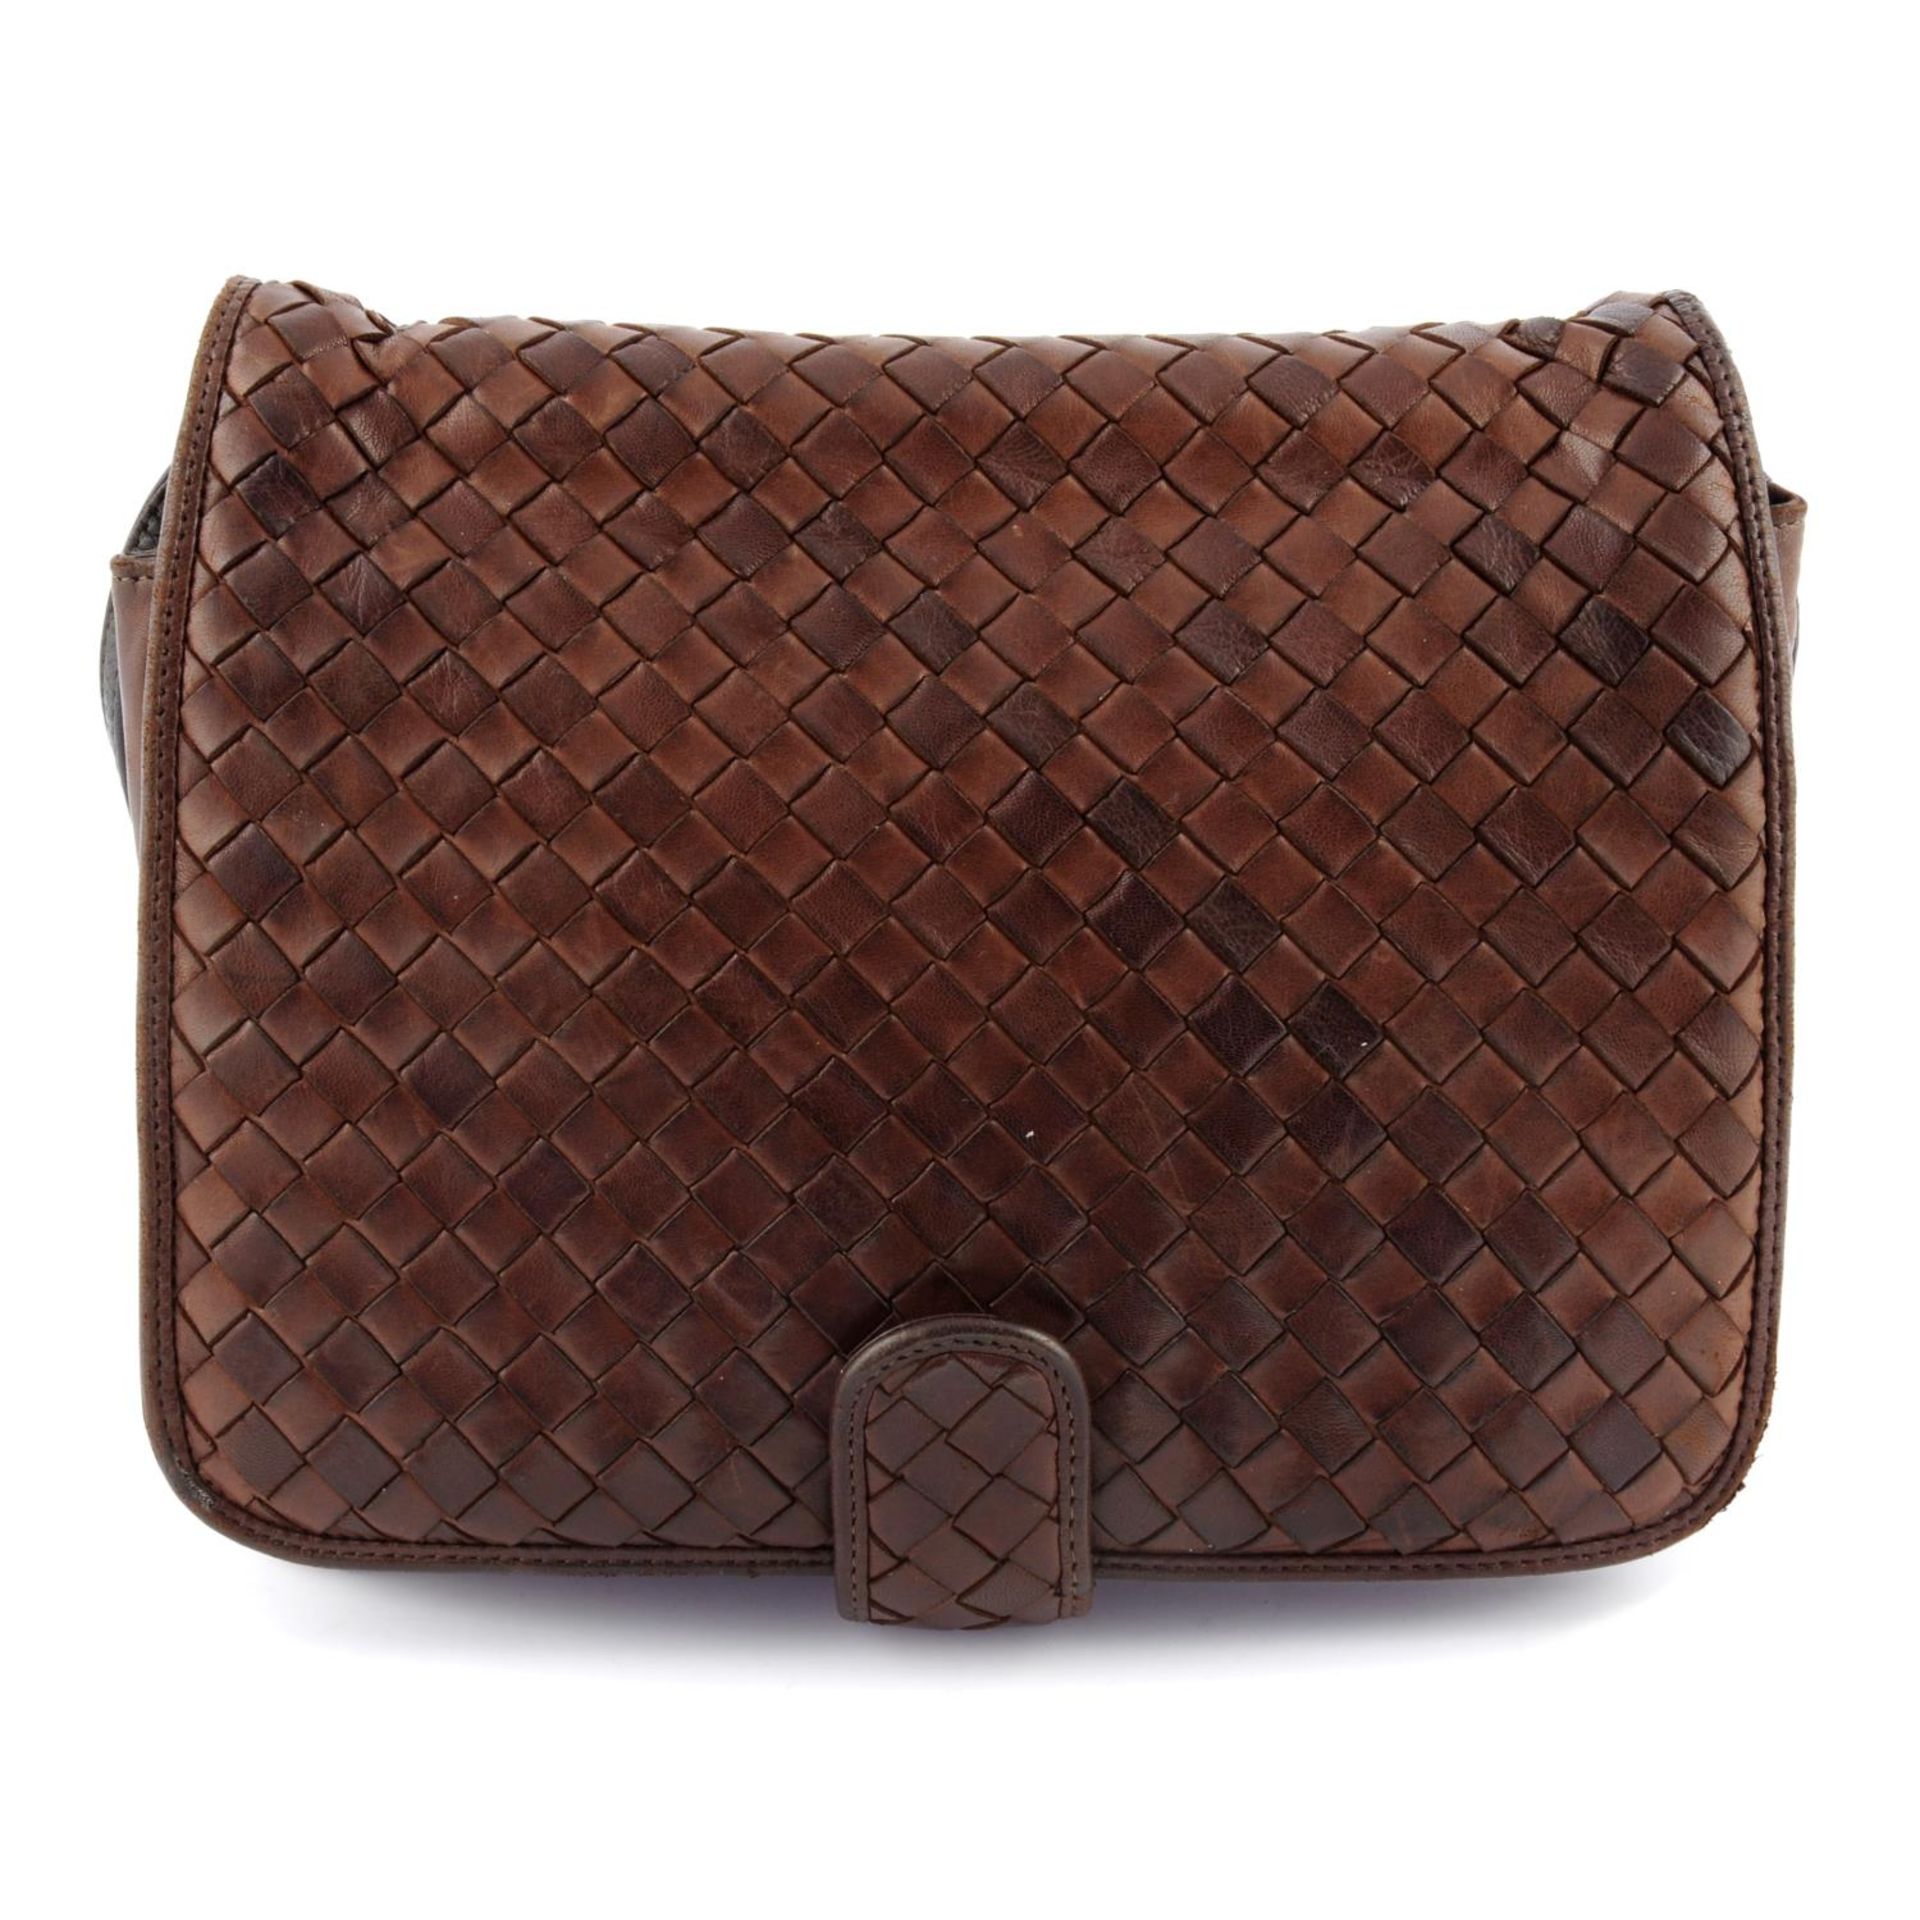 BOTTEGA VENETA - a brown Intrecciato handbag.